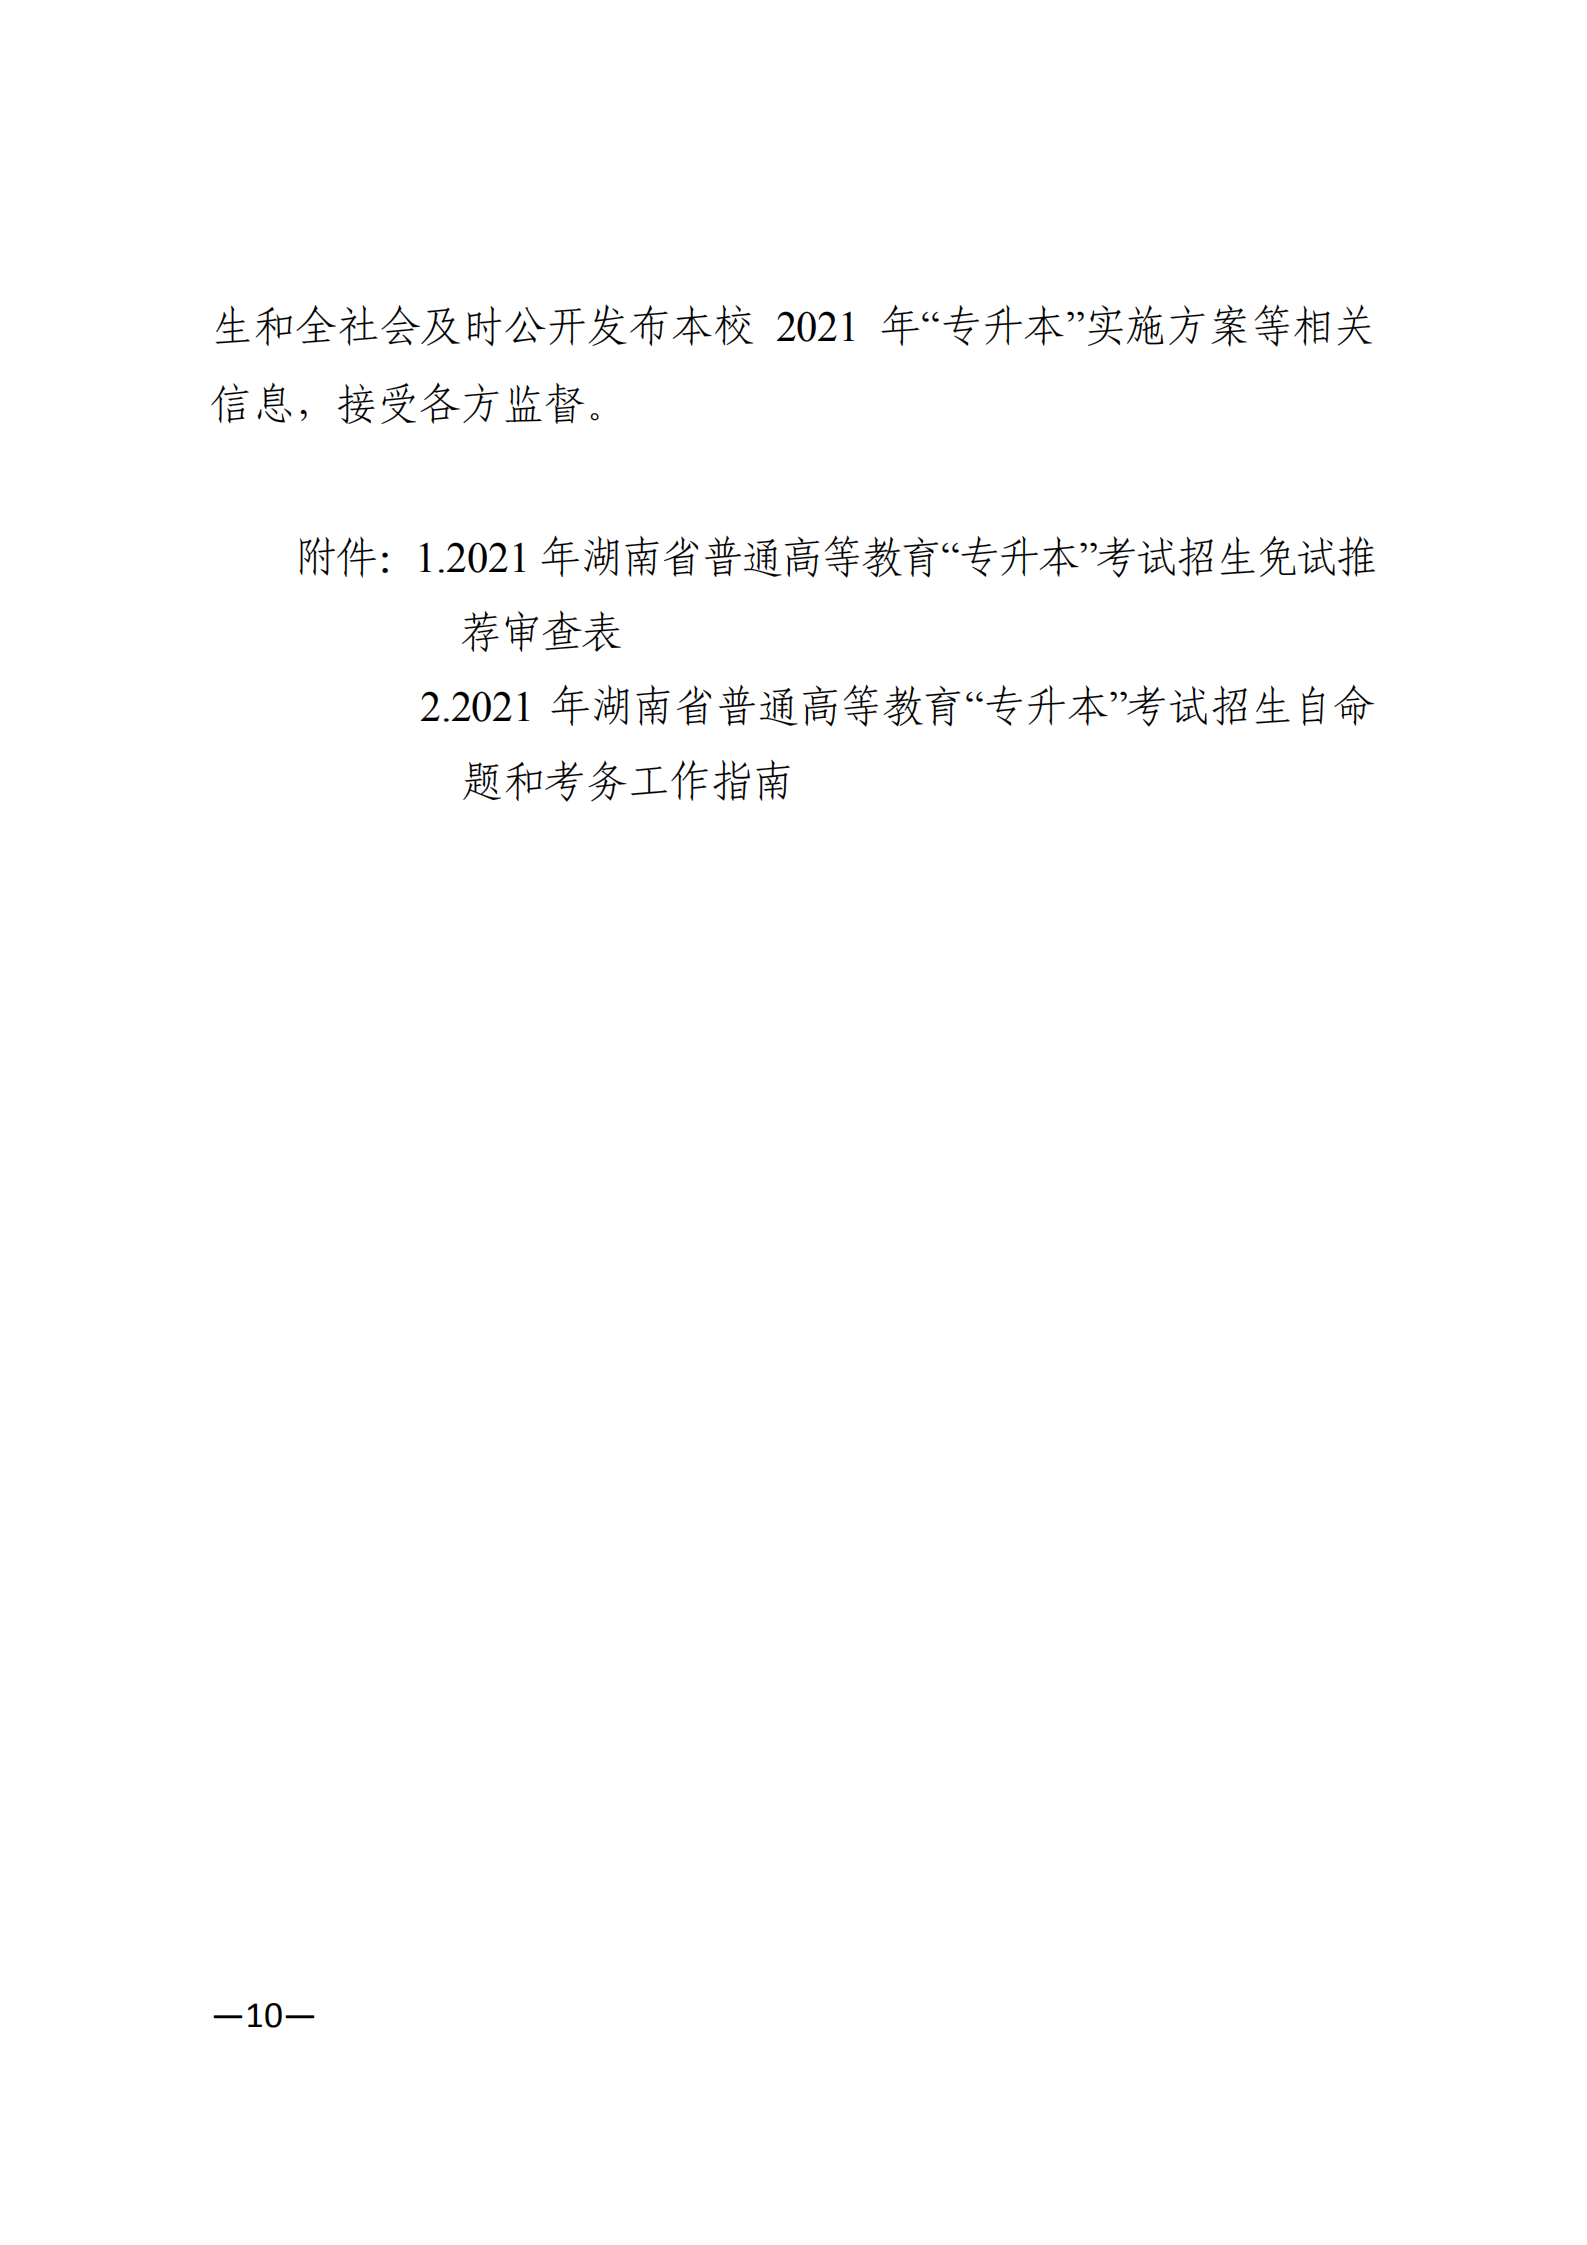 3_湘教发〔2021〕2号 关于印发《2021年湖南省普通高等教育“专升本”考试招生工作实施方案》的通知_09.png